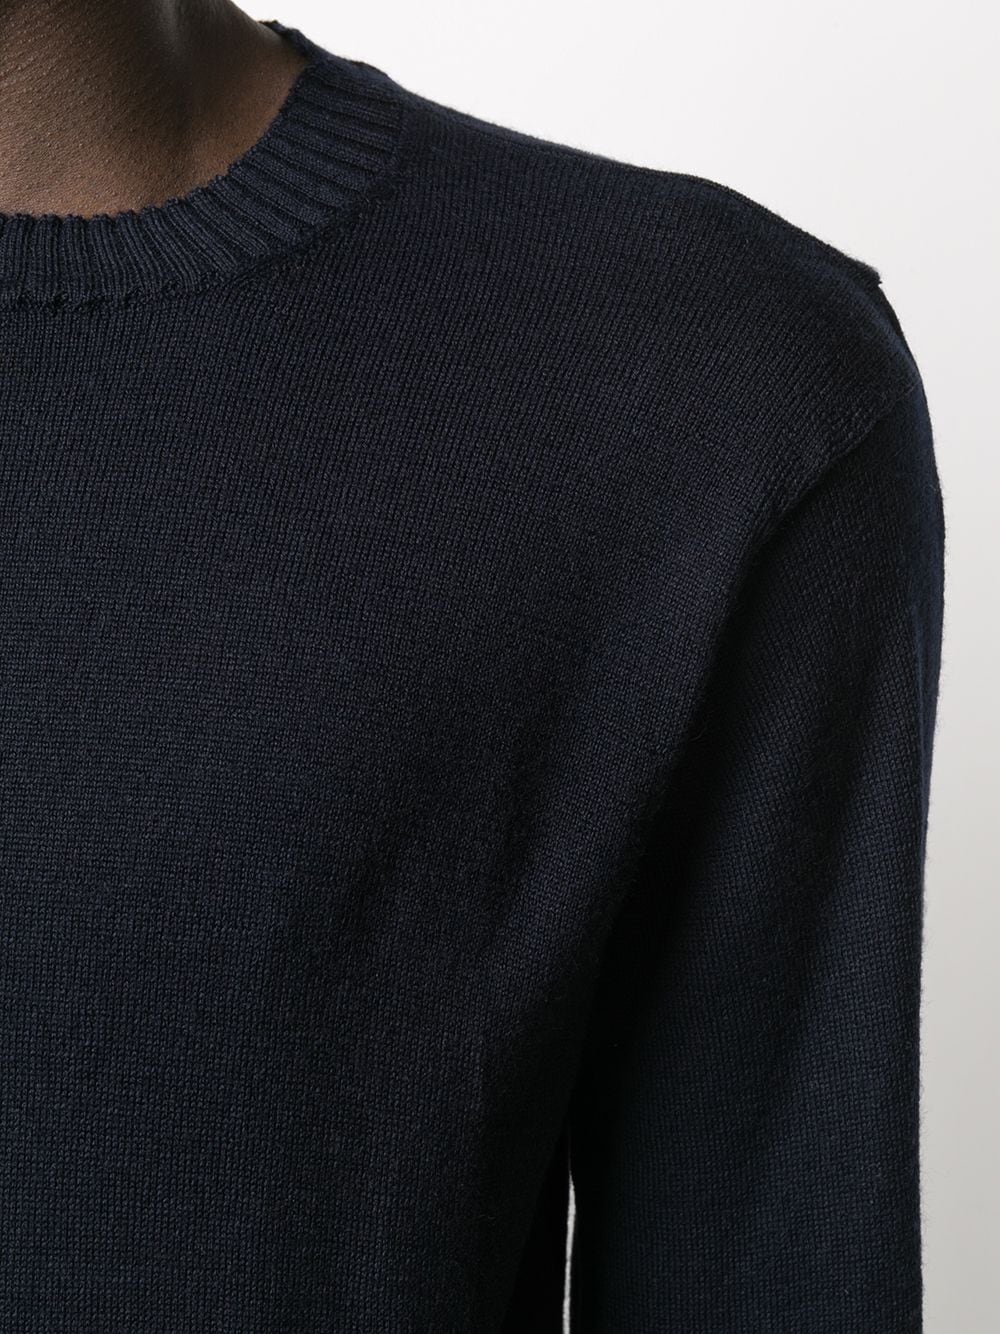 фото Maison flaneur свитер с круглым вырезом